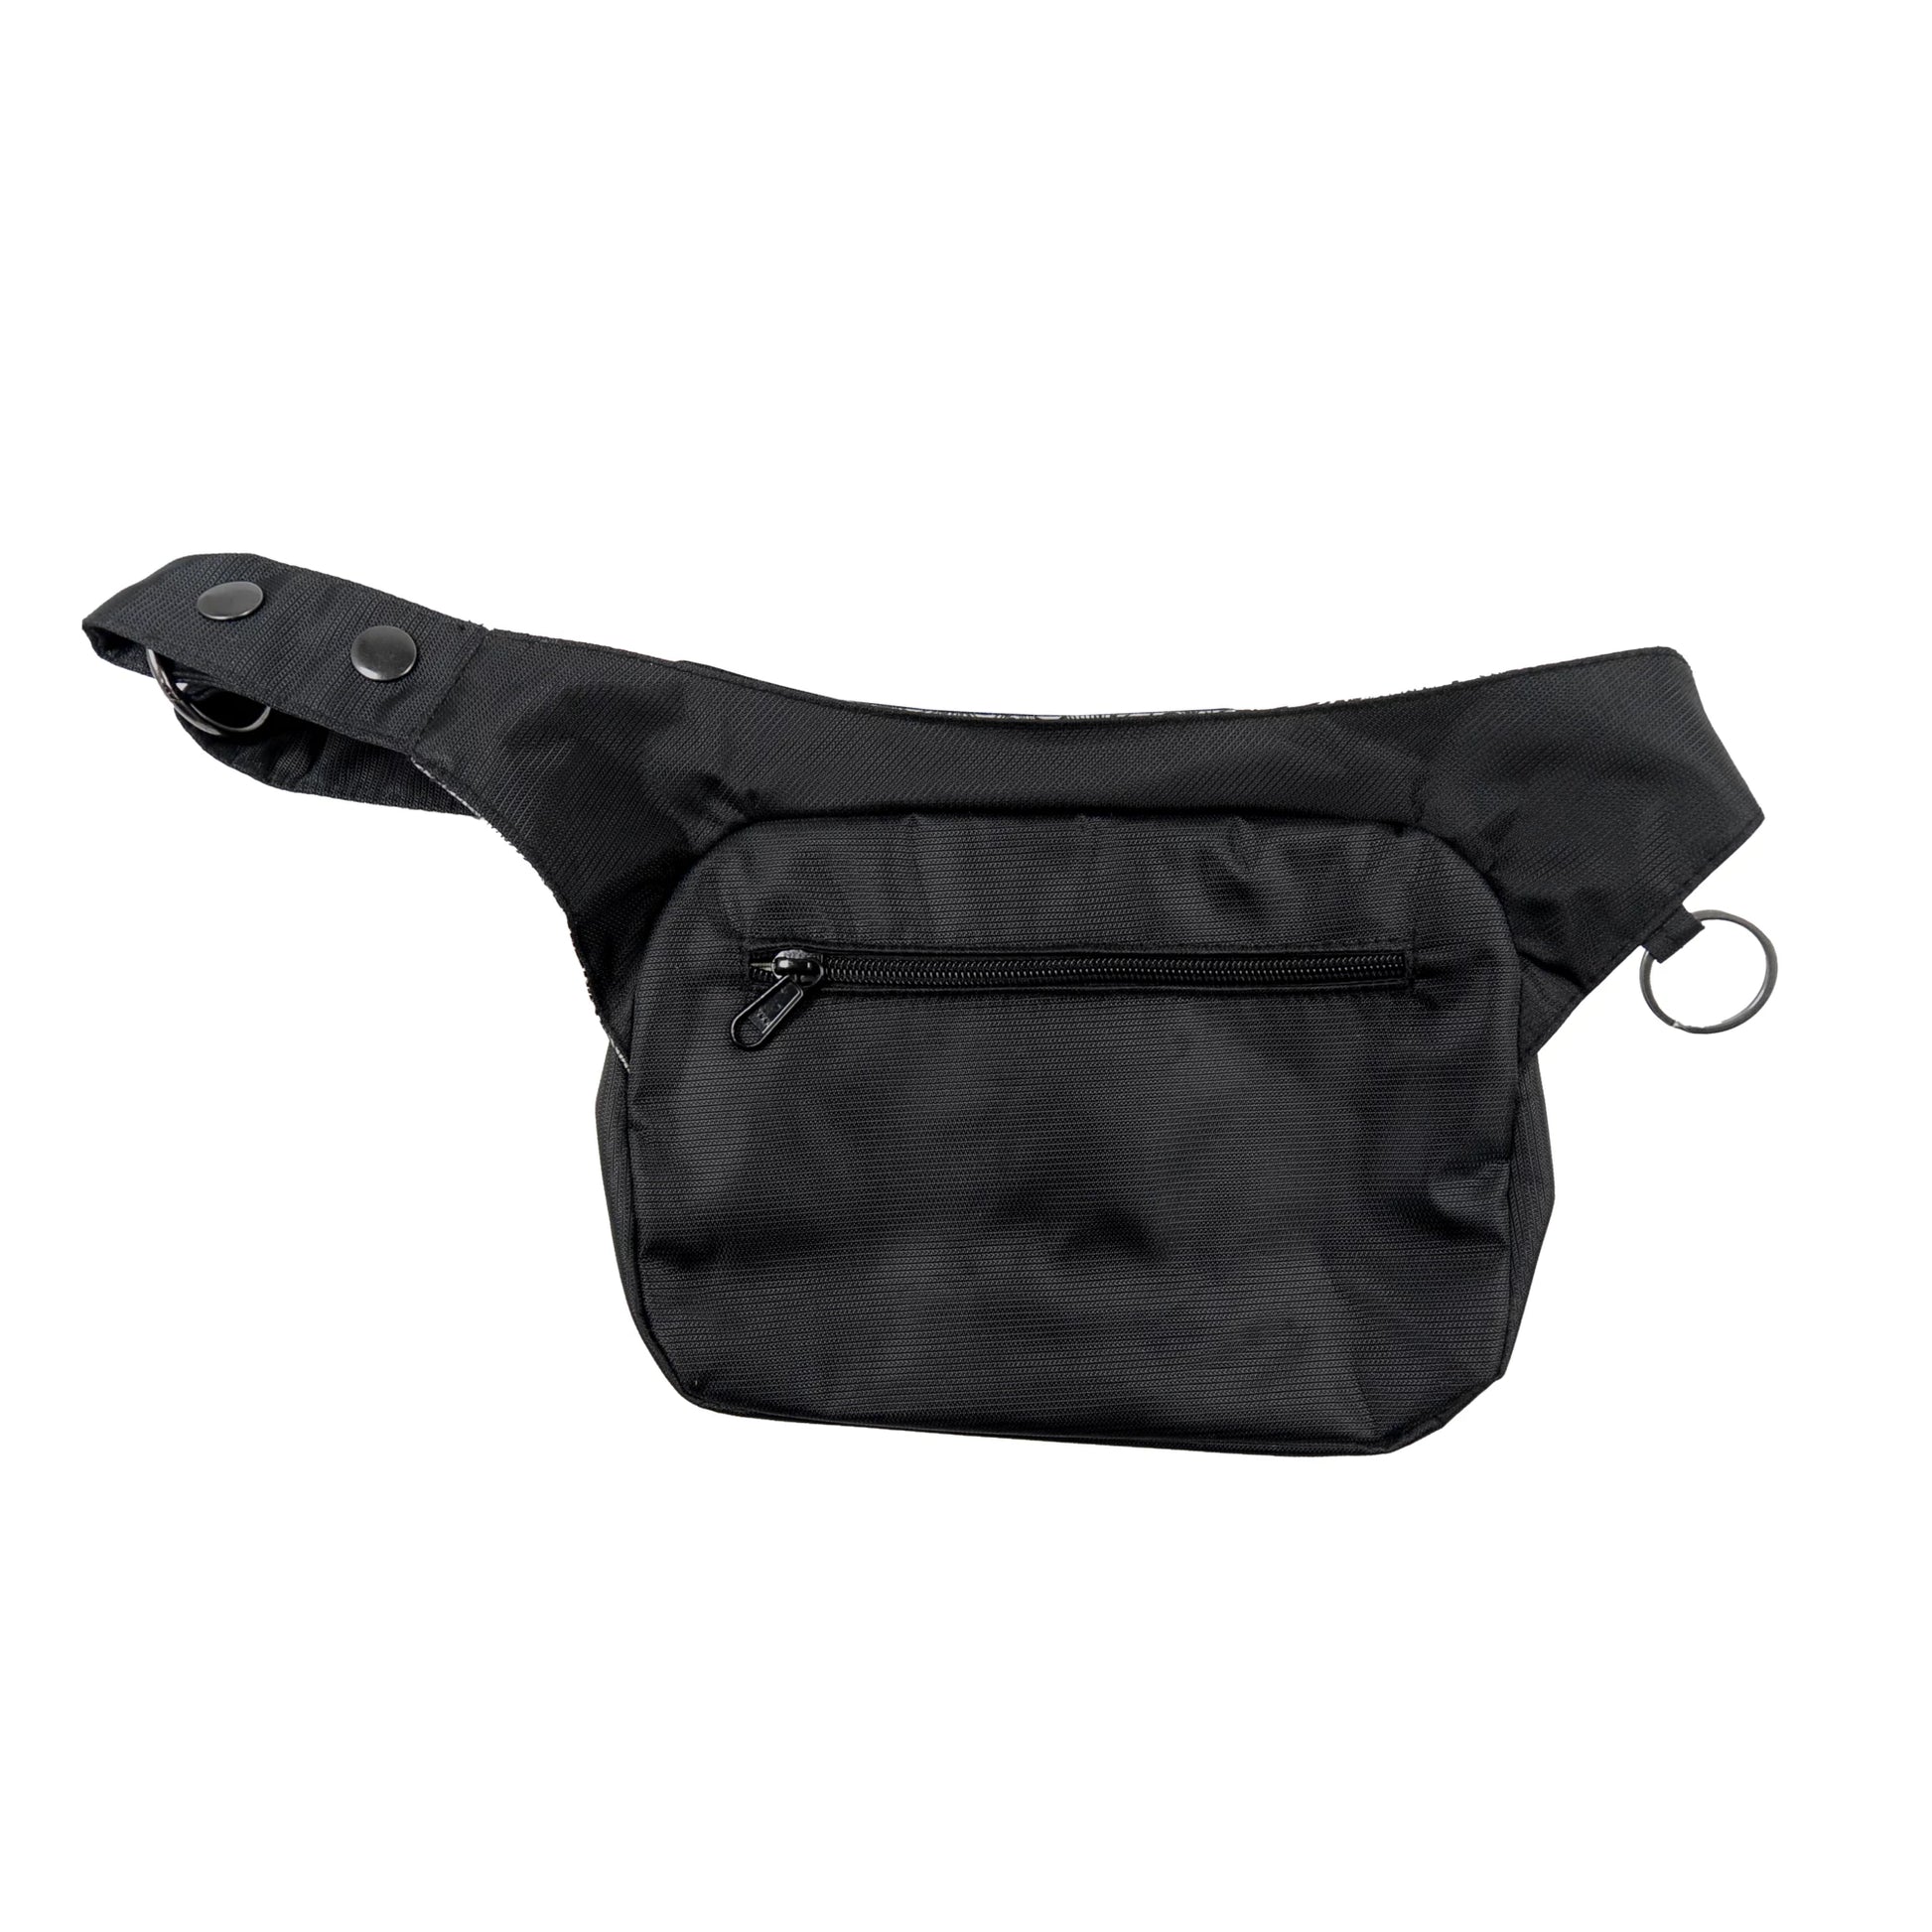 Gürteltasche, Gassi-Tasche aus wasserabweisendem Stoff schwarz mit floralem Muster. Auf der hinteren Seite der Tasche befindet sich ein Reißverschlussfach. Der Taschengurt ist größenverstellbar.